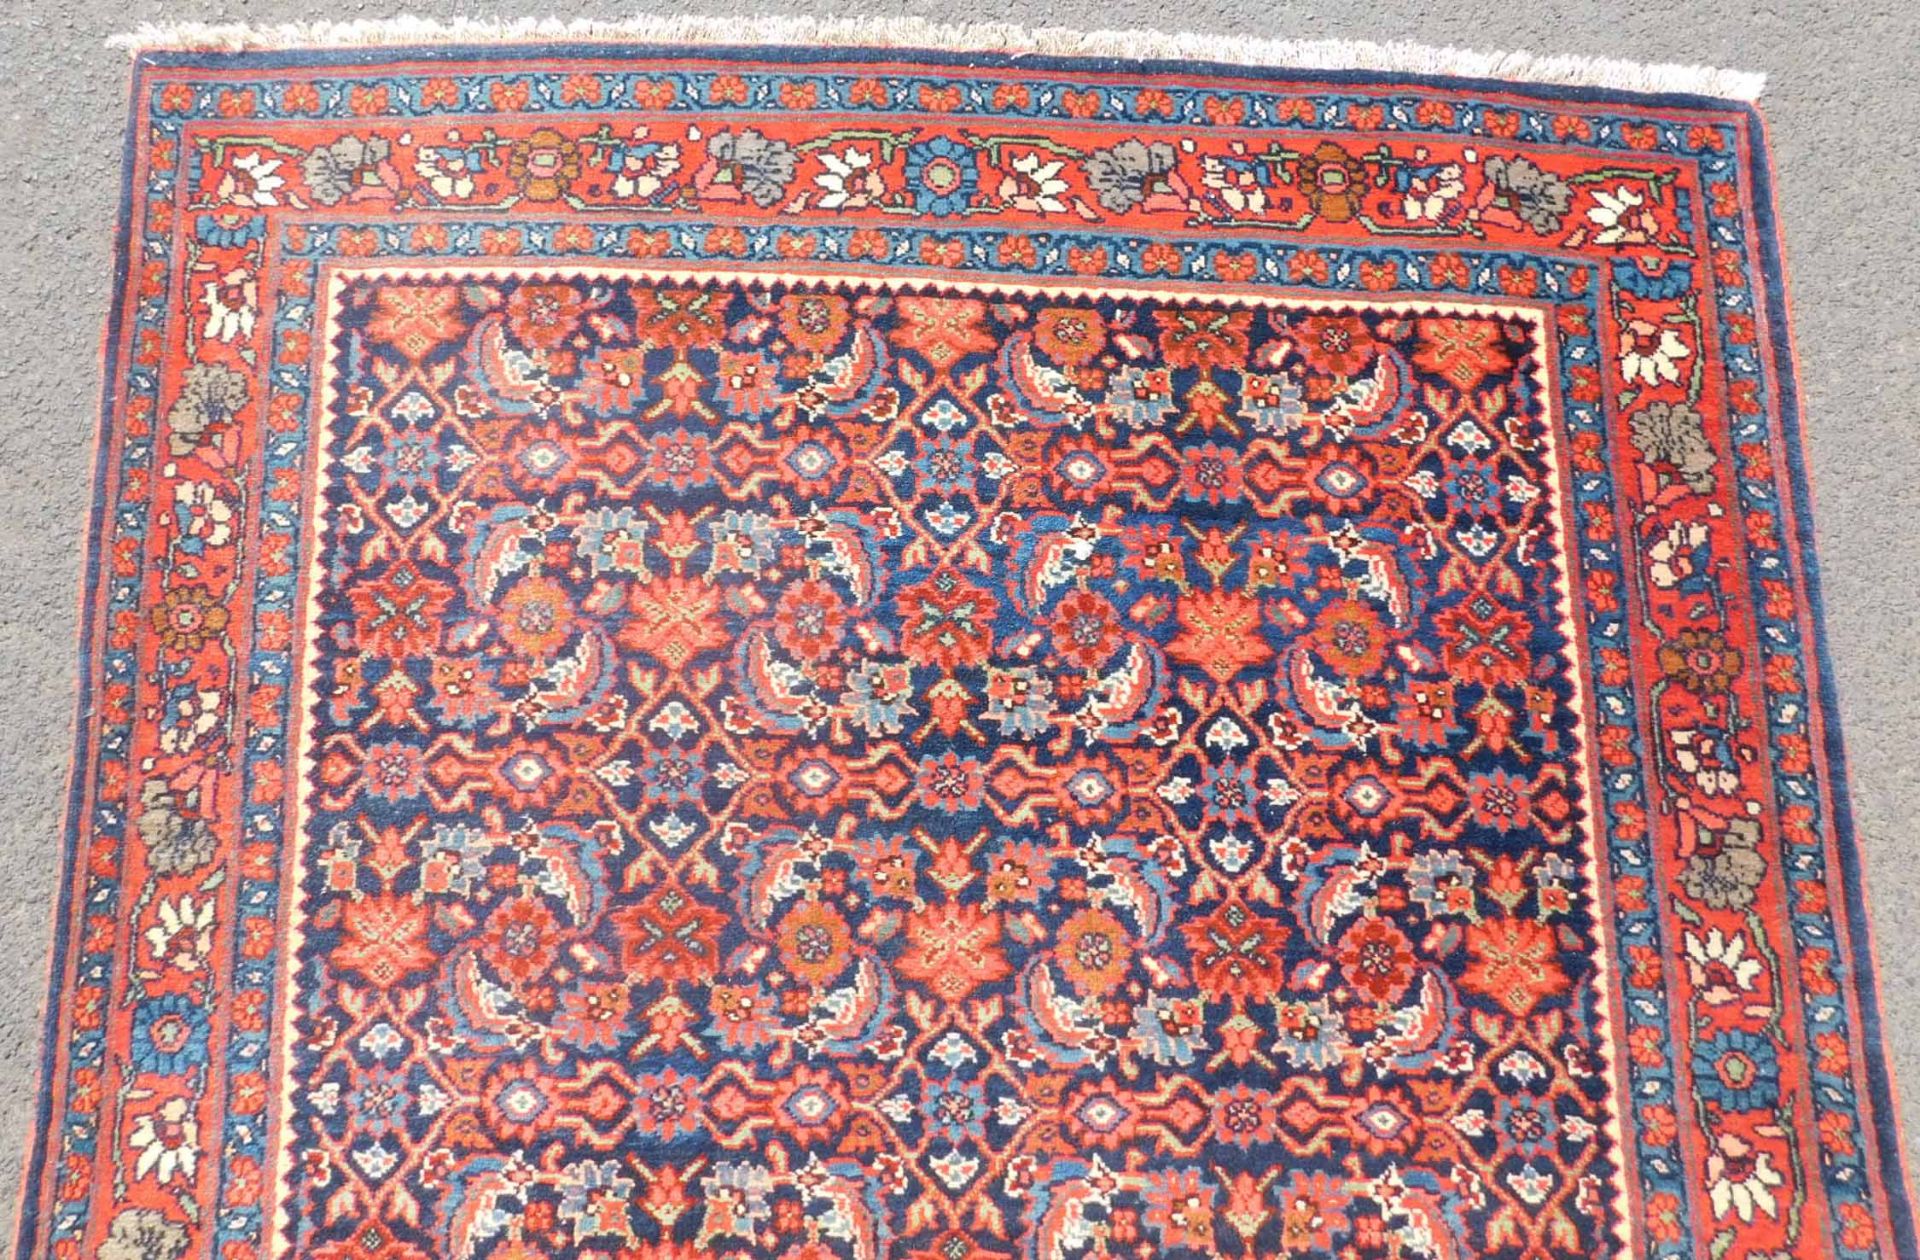 Bidjar Teppich Galerie. Circa 80 - 120 Jahre alt. - Bild 7 aus 9